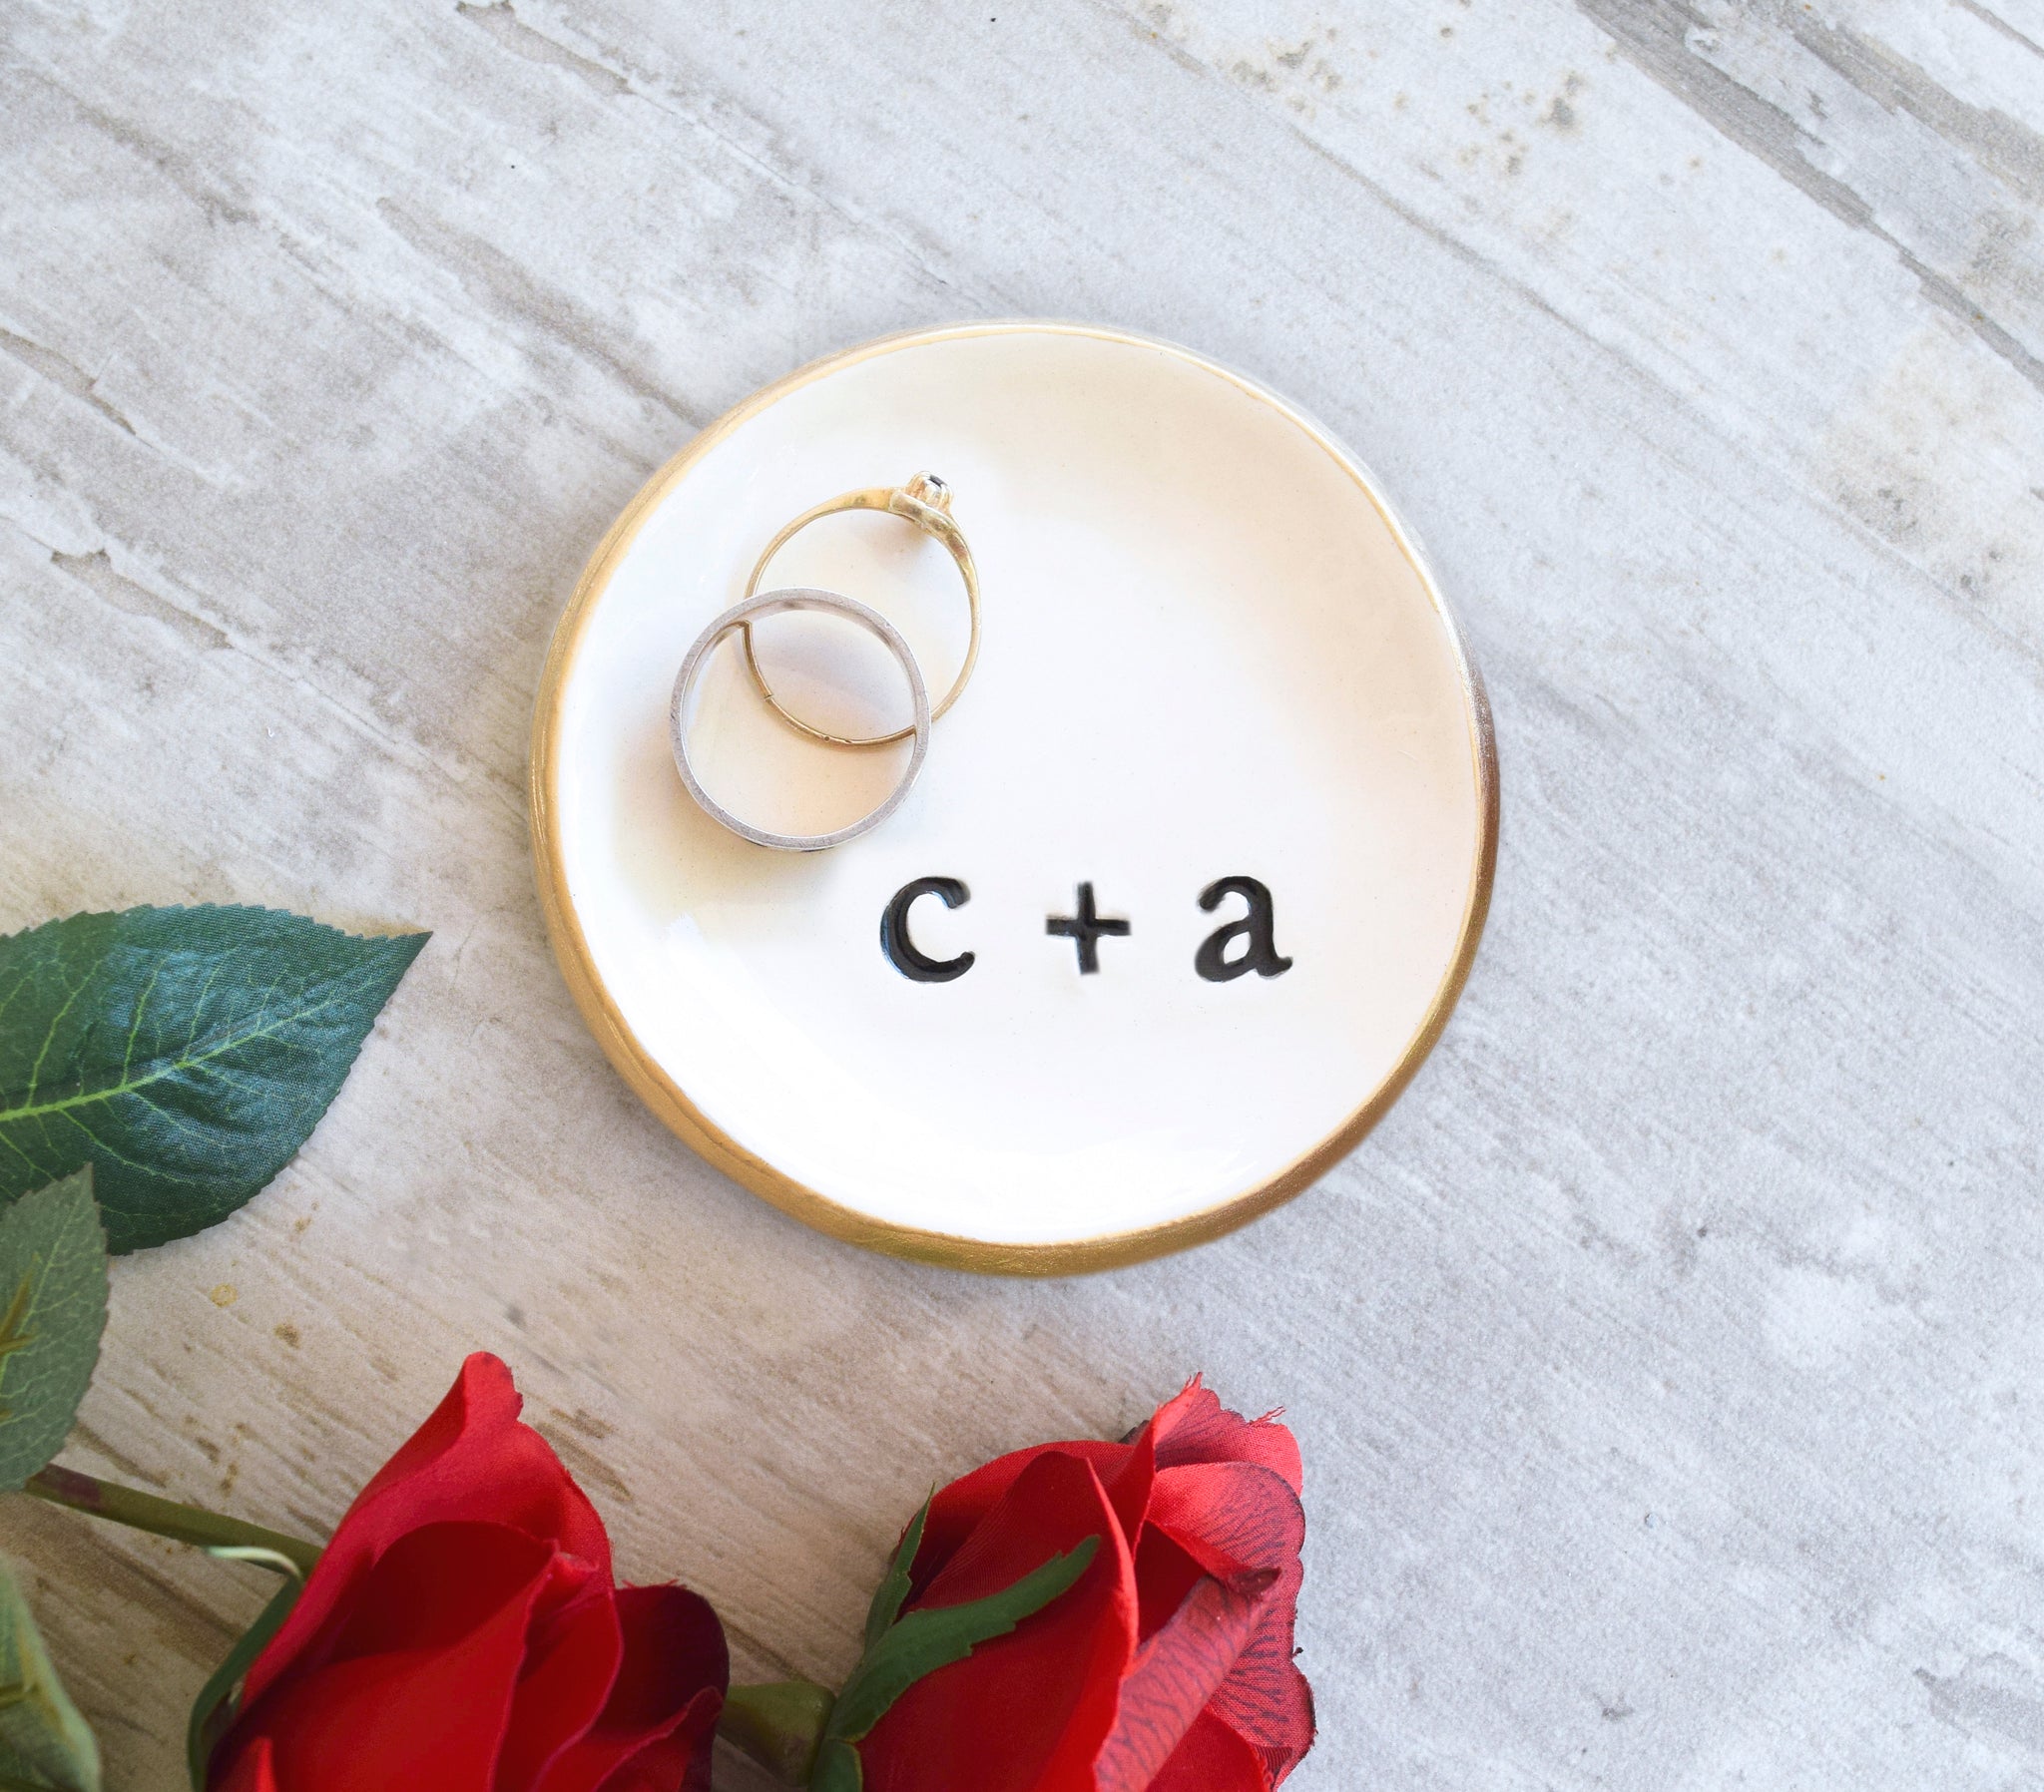 BUNDLE Personalized Trinket Dish, Wedding Ring Holder, Engagement